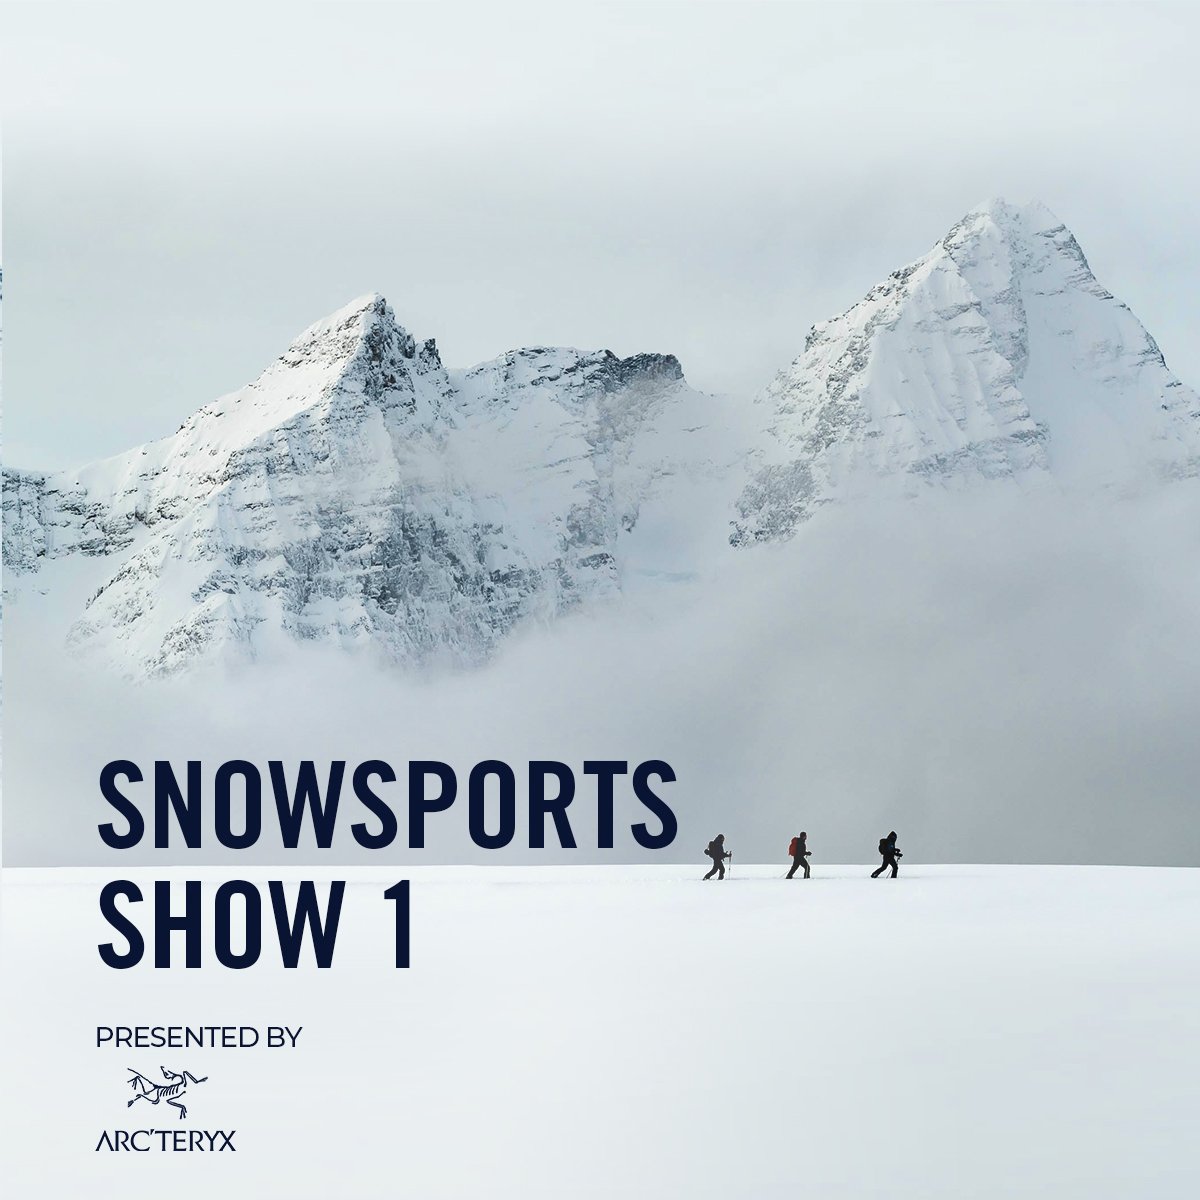 vimff fall series snowsports show x